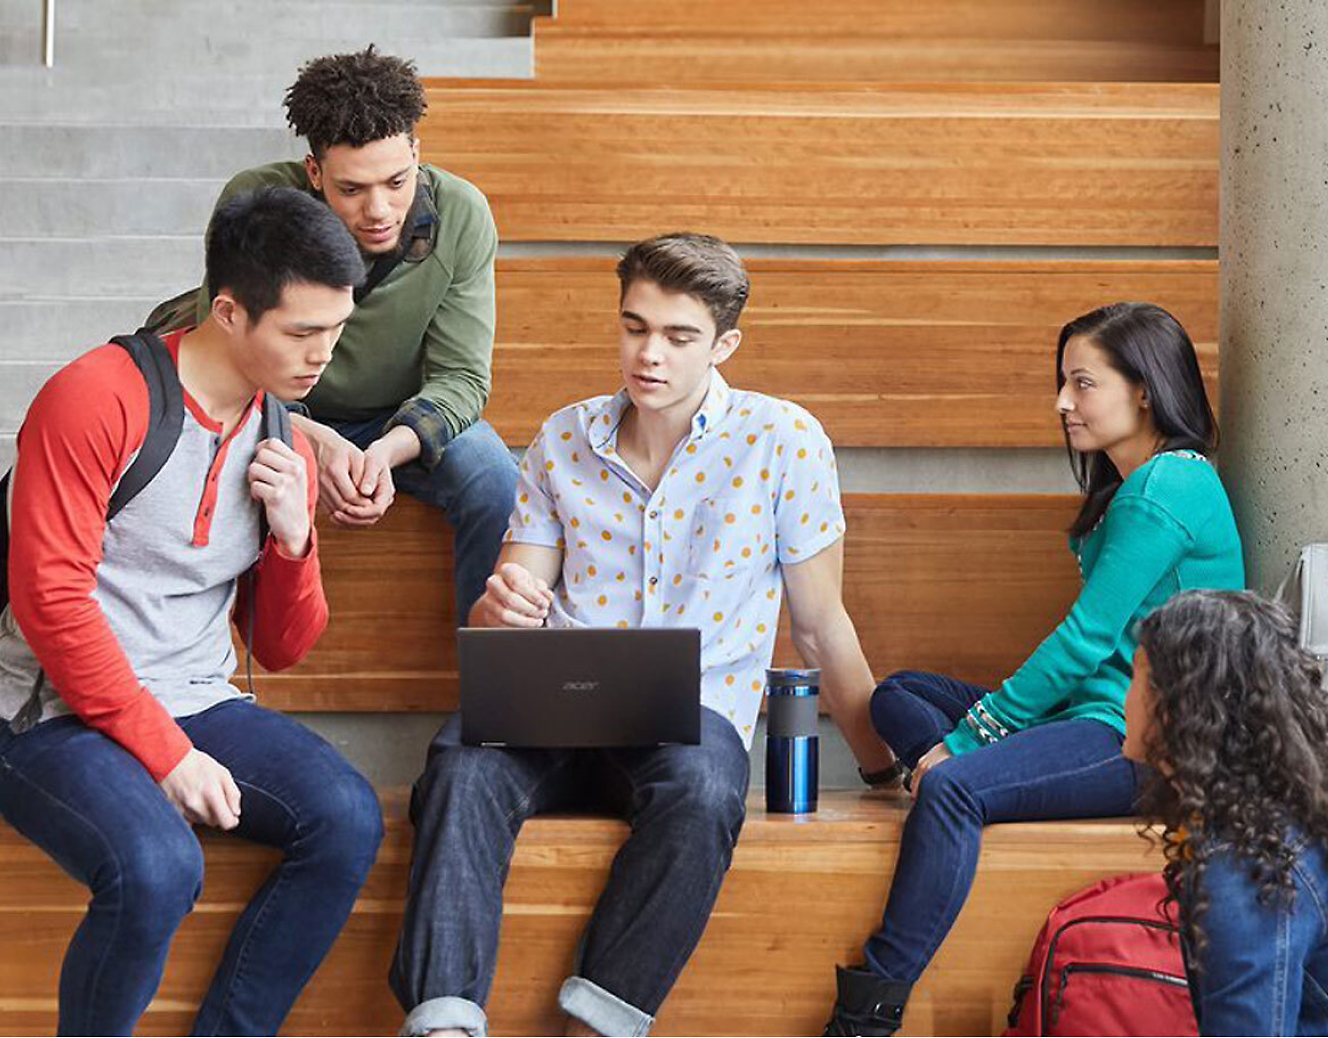 مجموعة من الطلاب يجلسون على مقعد خشبي مع كمبيوتر محمول.